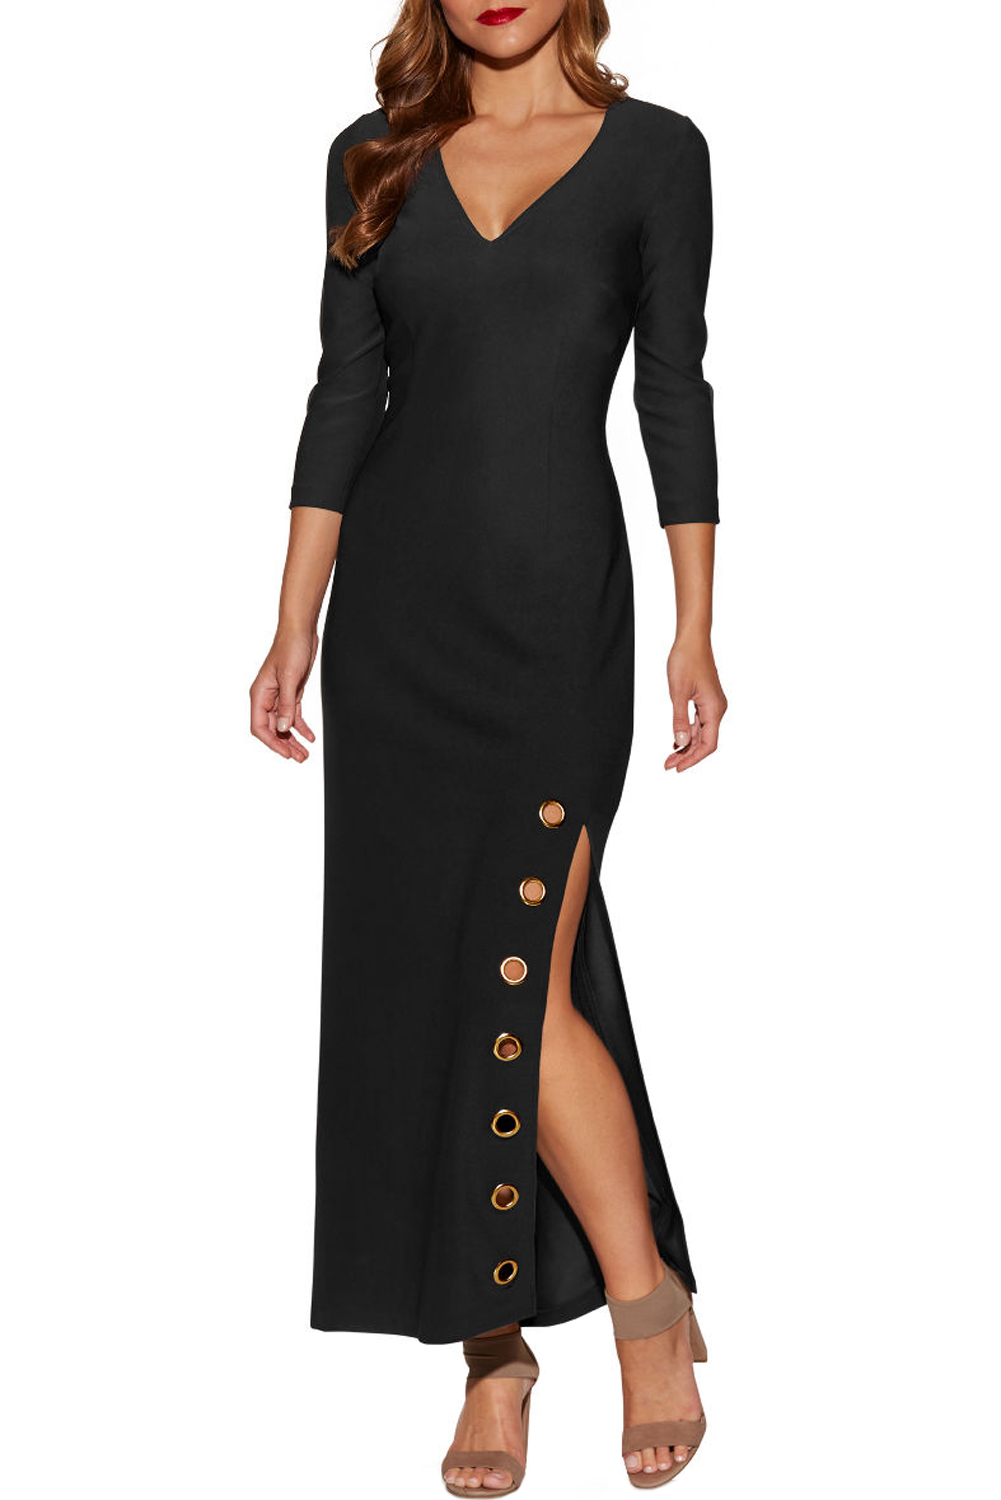 black dress with slits on sides